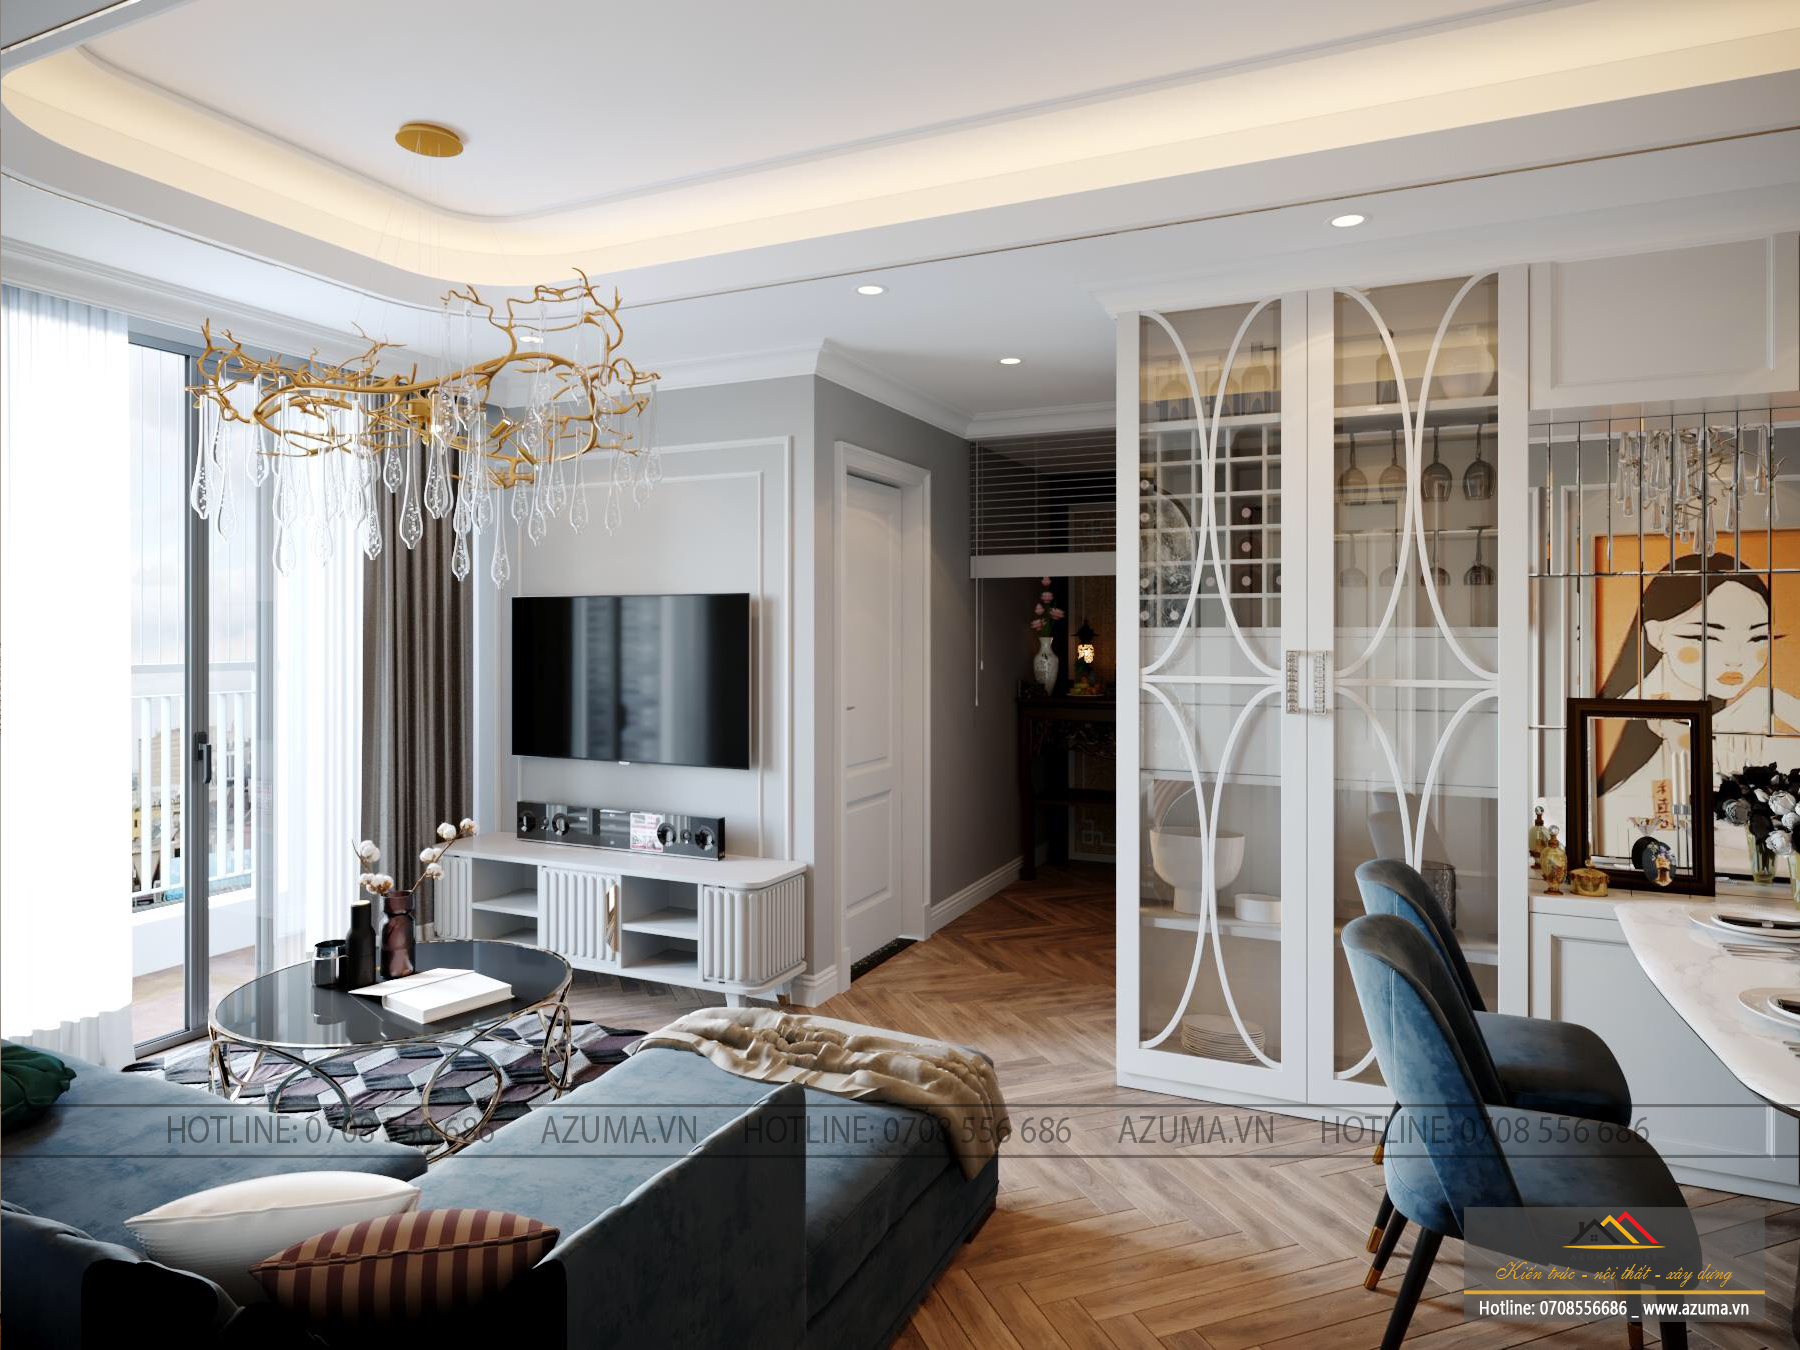 Nội thất căn hộ Le Capitole theo phong cách tân cổ điển sang trọng - chủ đầu tư Mrs. Dung